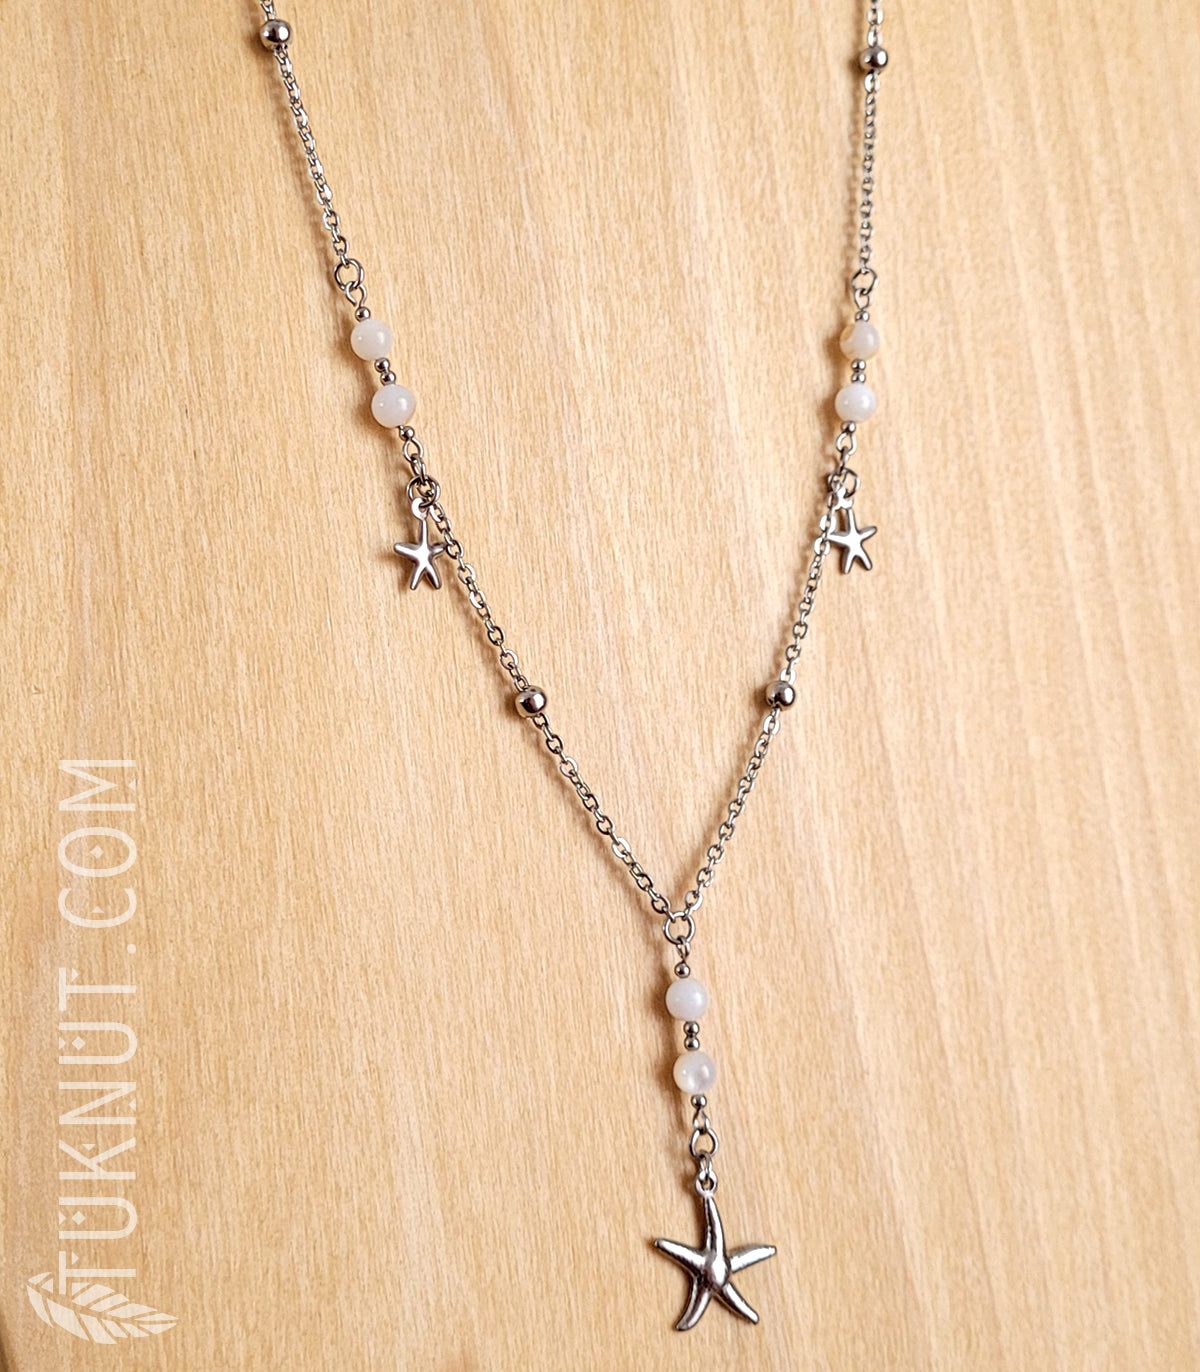 Collier en acier inoxydable avec breloques (étoile de mer) et nacre de perle (couleurs : blanc, beige et argent) TUKNUT